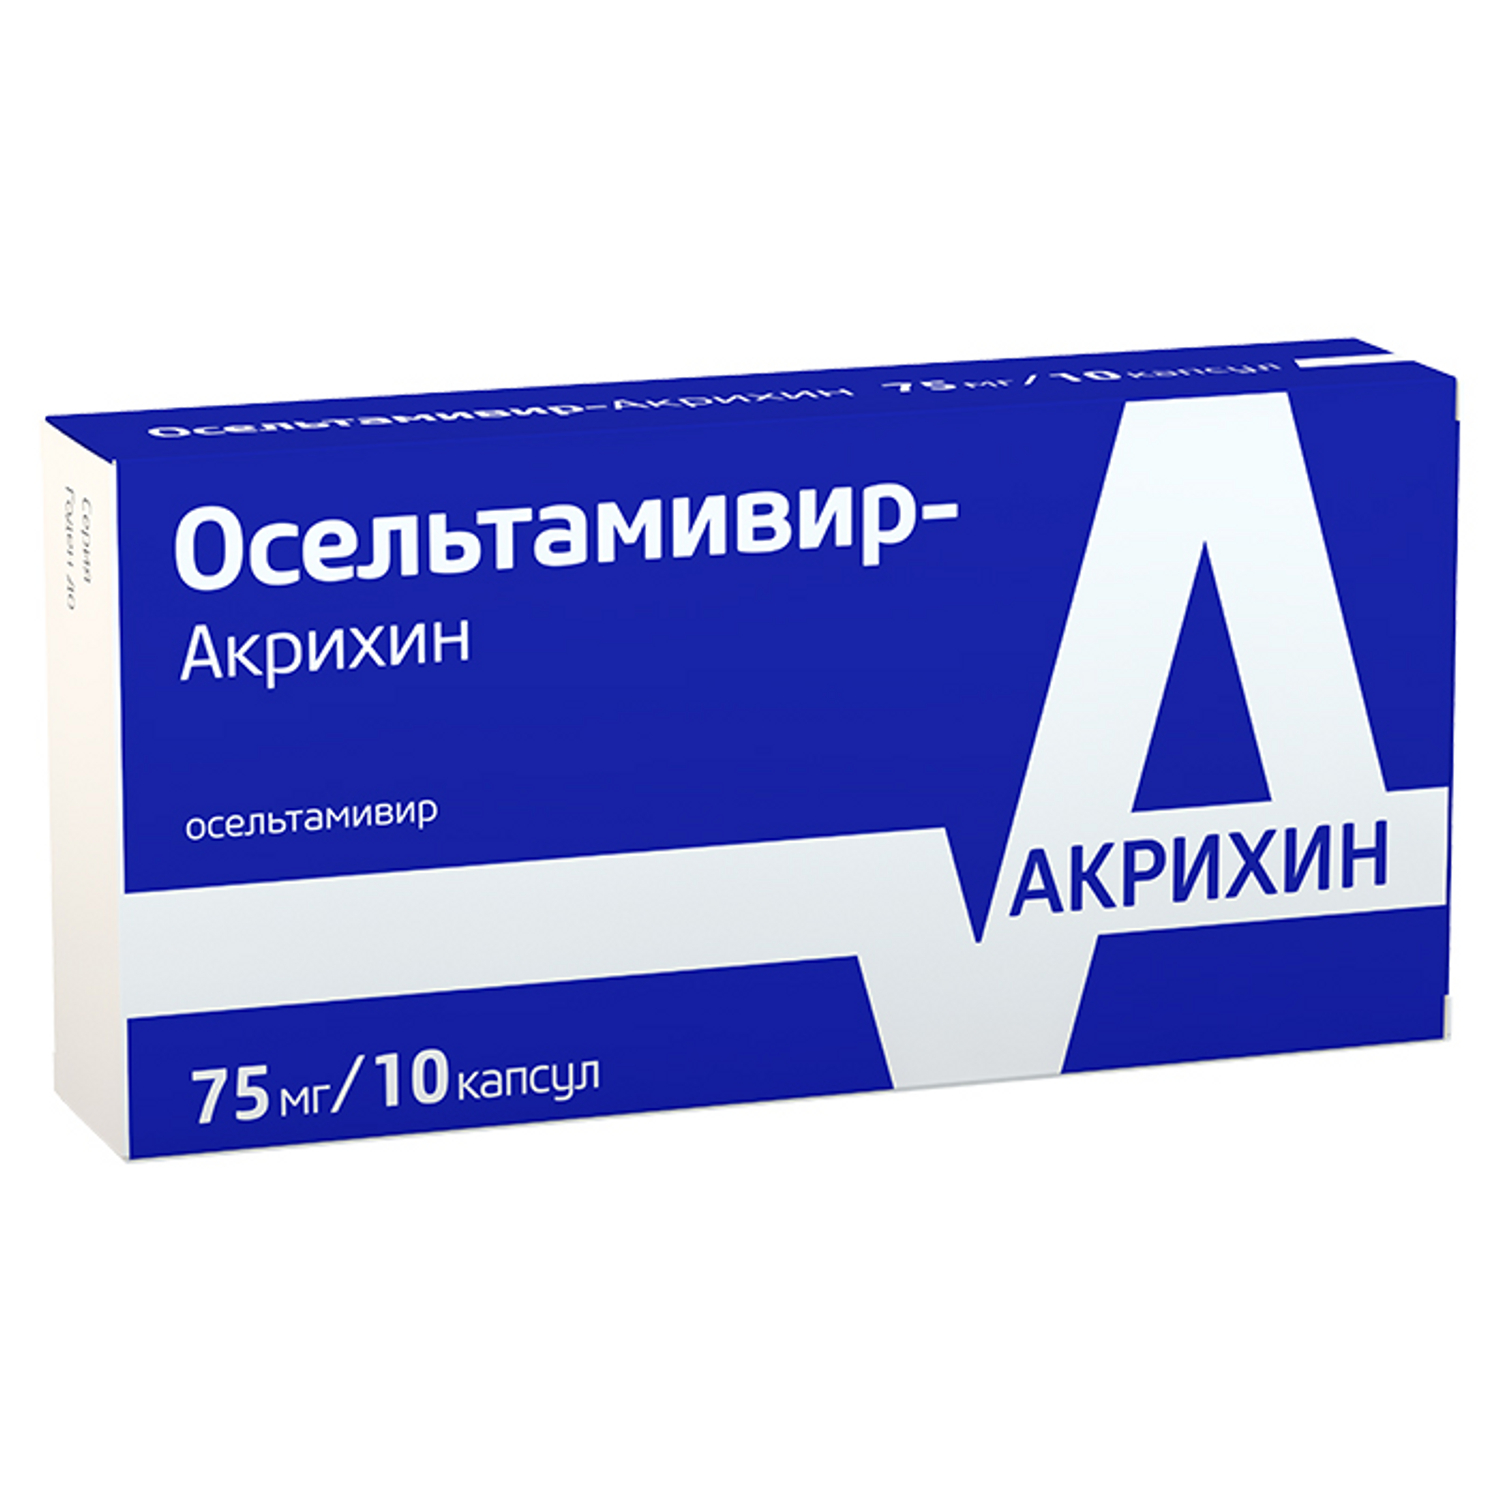 Осельтамивир-Акрихин капсулы 75 мг 10 шт  в Октябрьском, цена 866 .